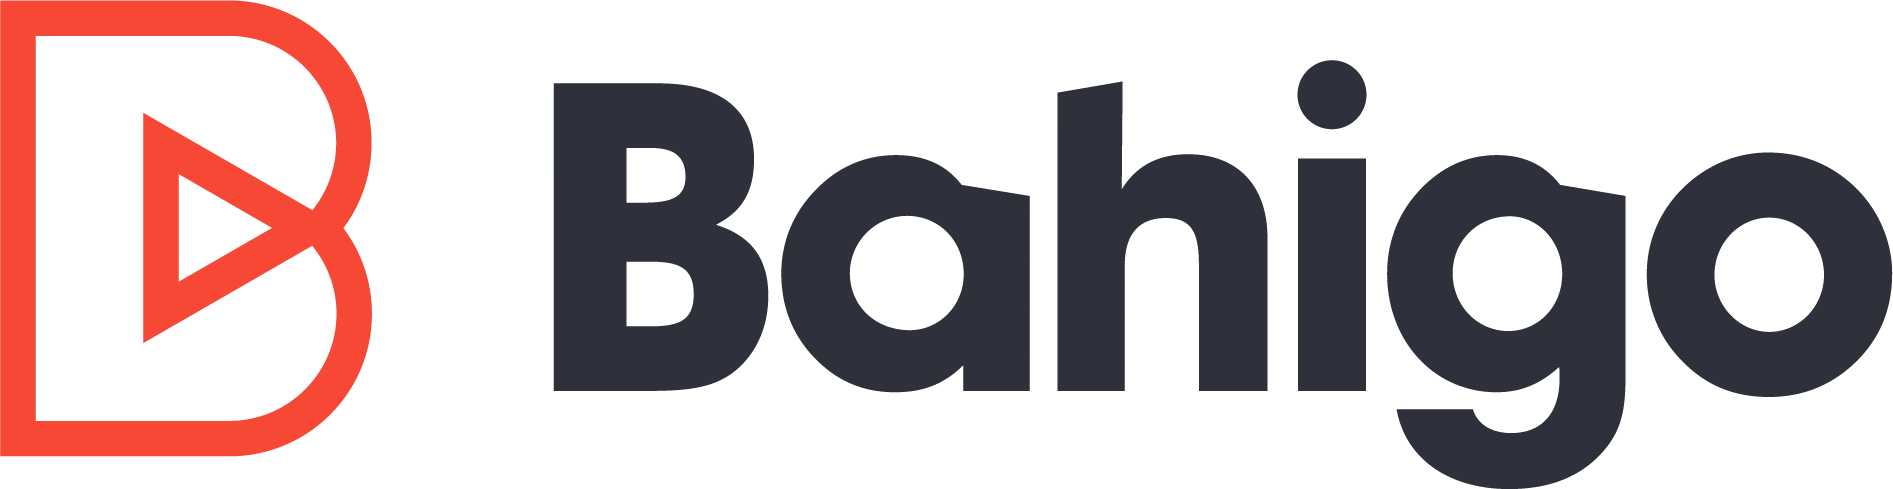 Logo image for Bahigo